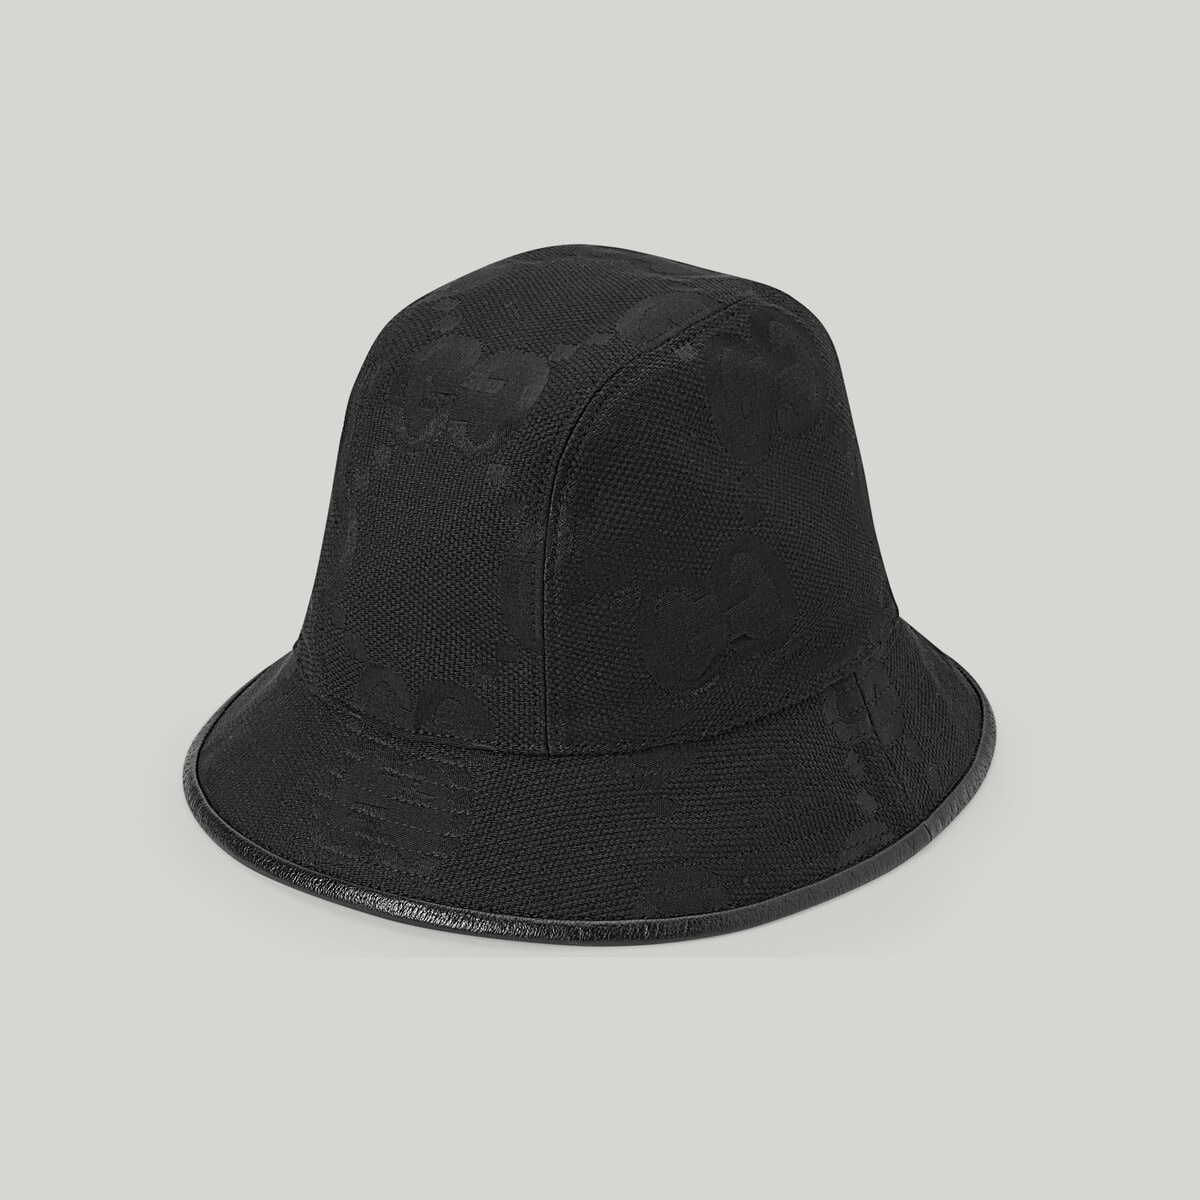 Jumbo GG bucket hat - 4